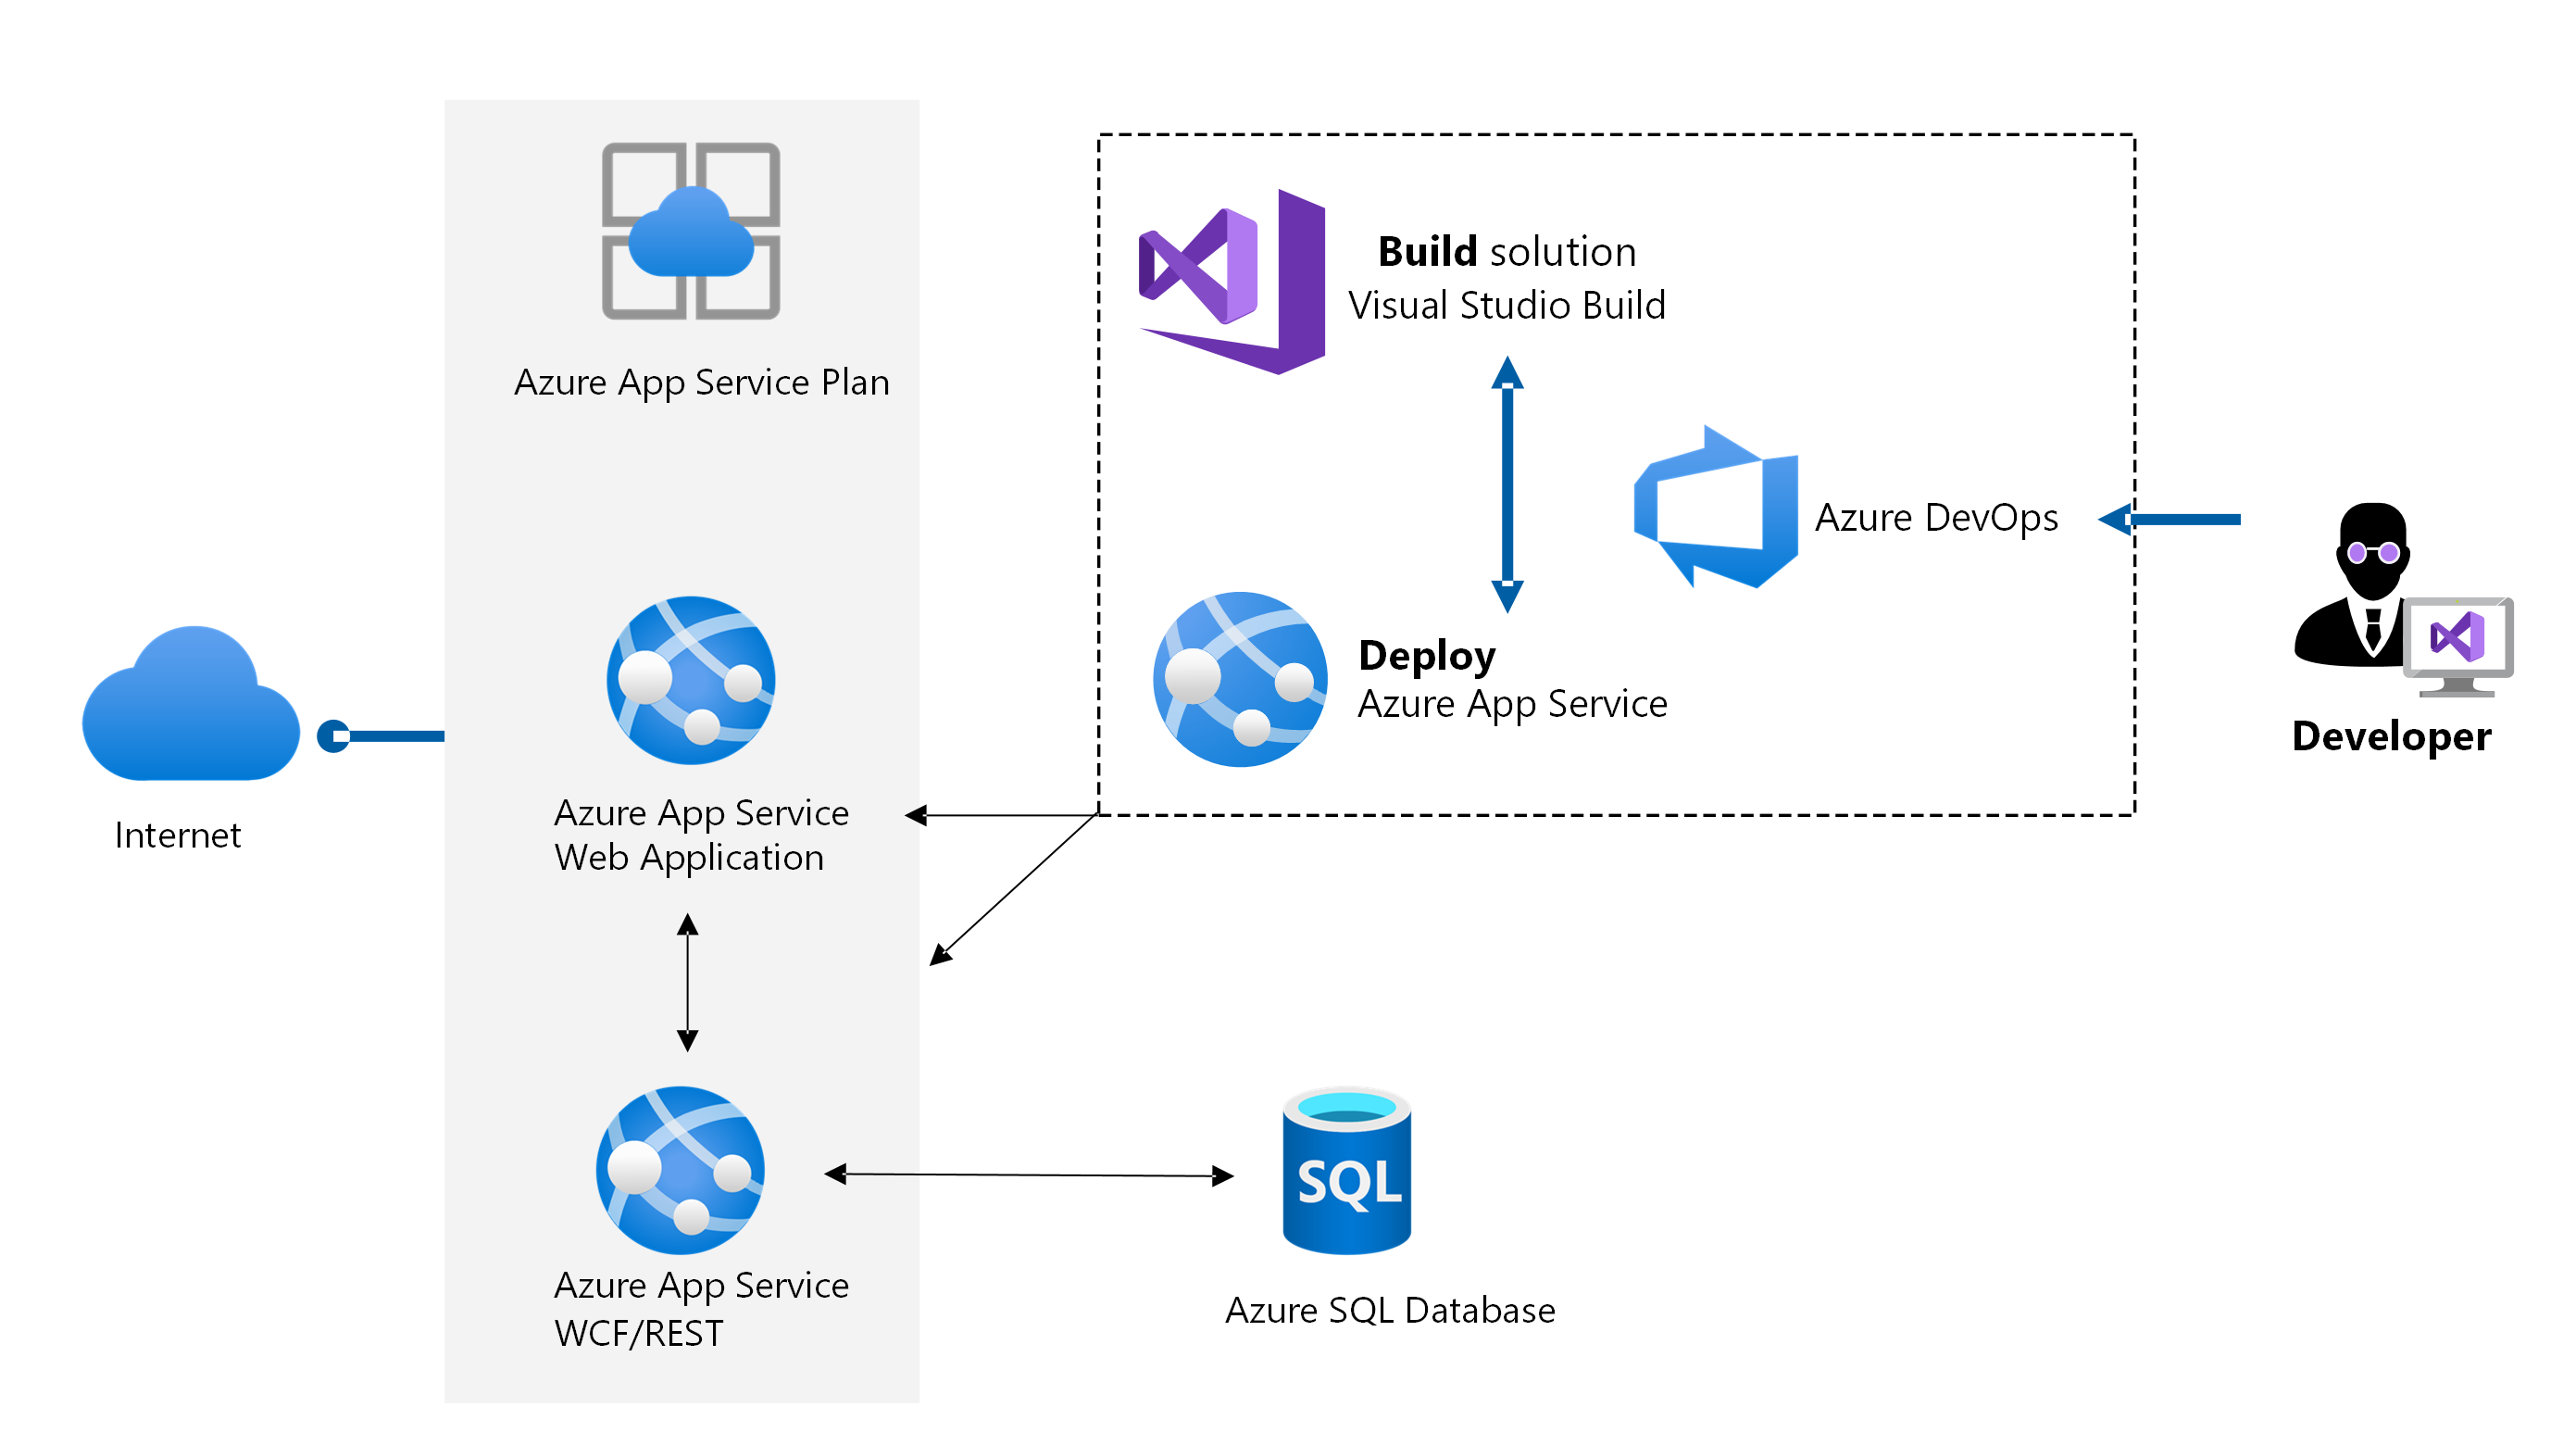 Po przeprowadzeniu migracji aplikacji na platformę Azure wskaż aplikację usług W C F/R E S T. Ocena bazy danych, migracja jej, aprowizuj dwie aplikacje internetowe, a następnie wdróż aplikacje.